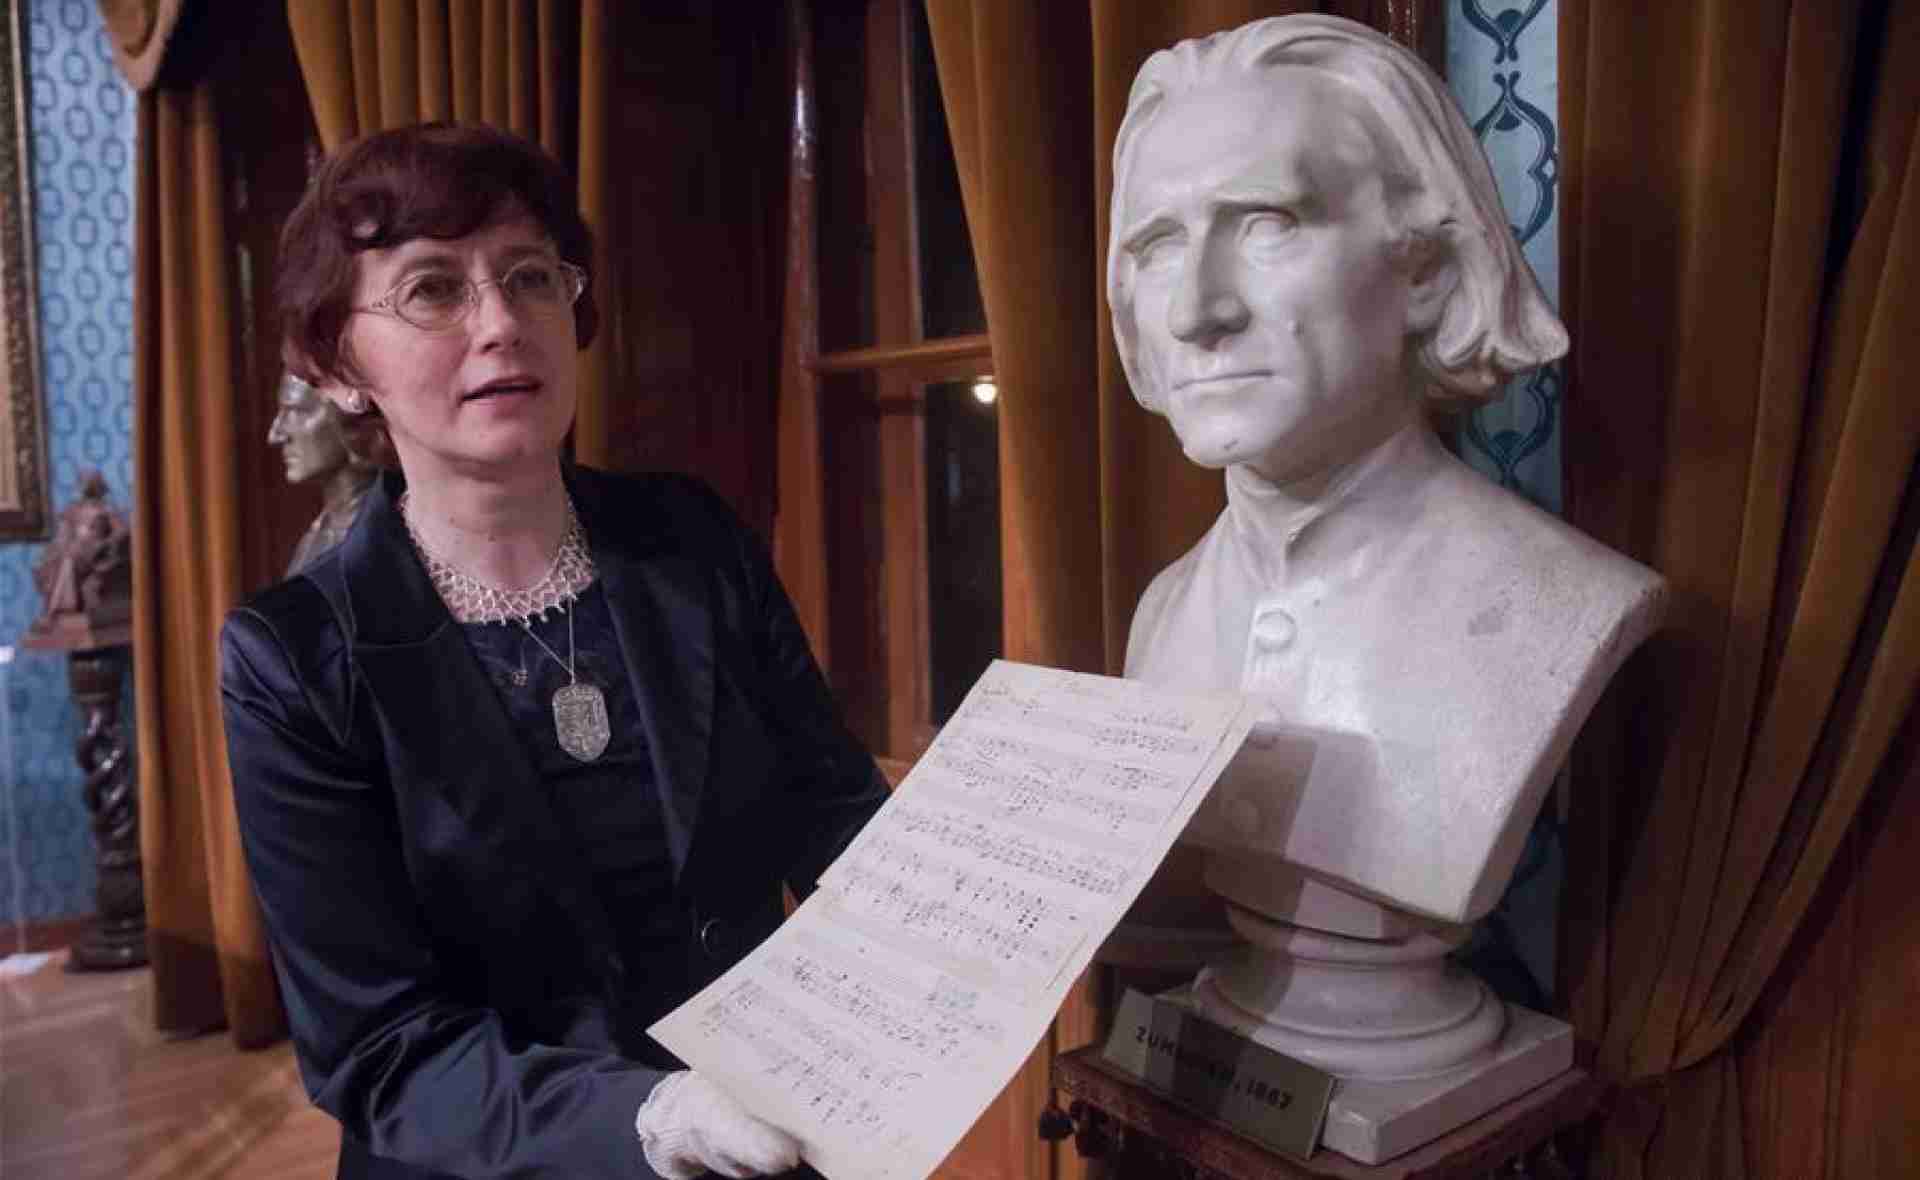 Spécialités de la collection musicale du Musée Mémorial et Centre de recherche Liszt Ferenc de Budapest